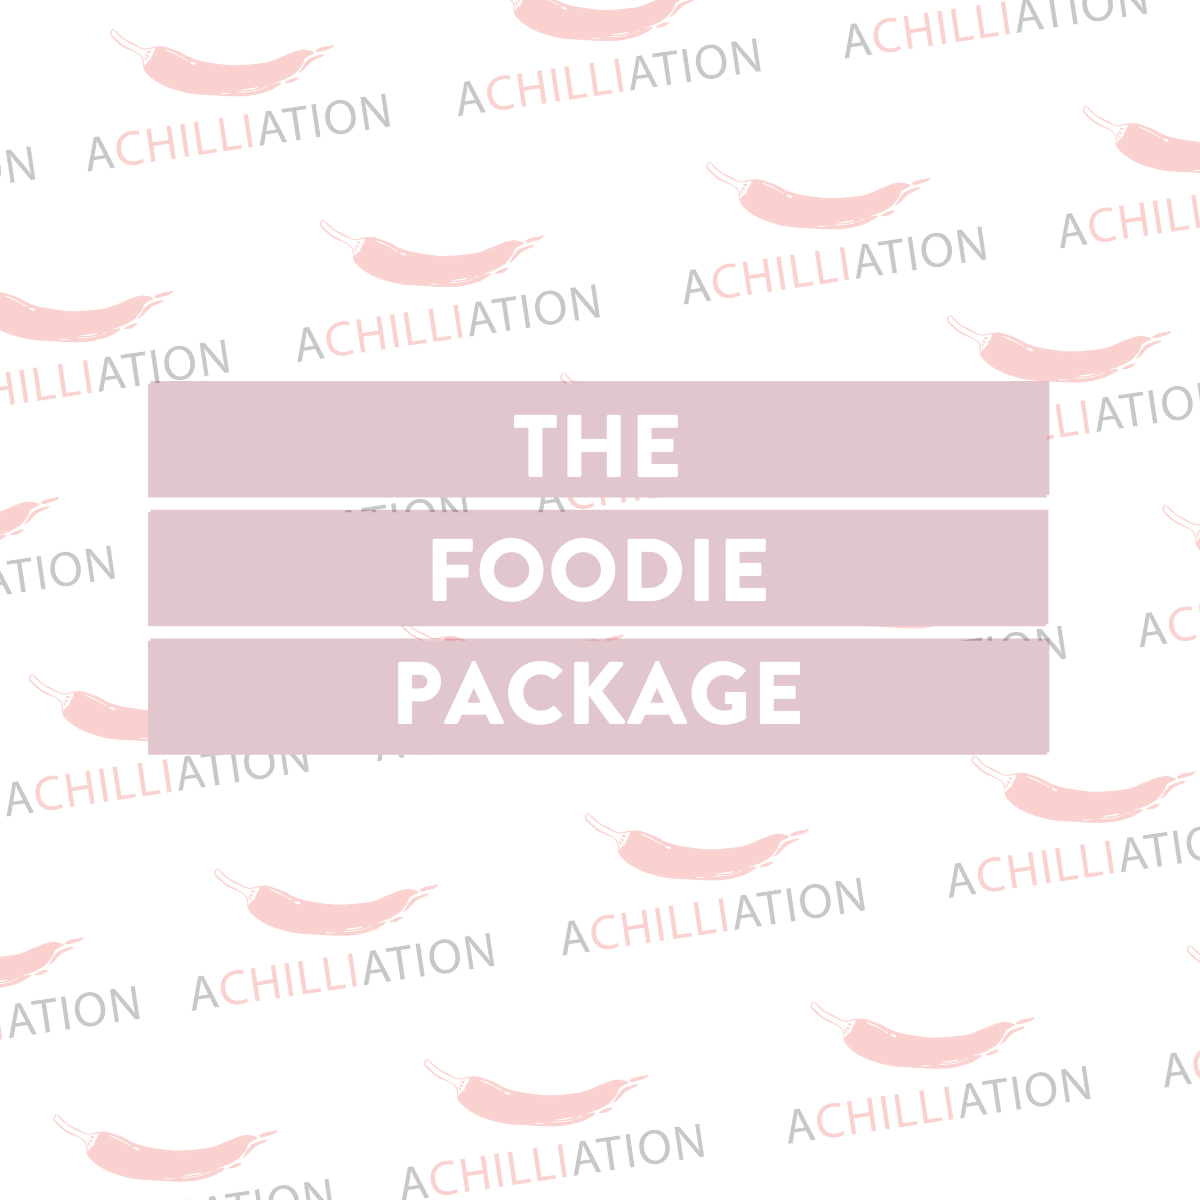 The Foodie Package